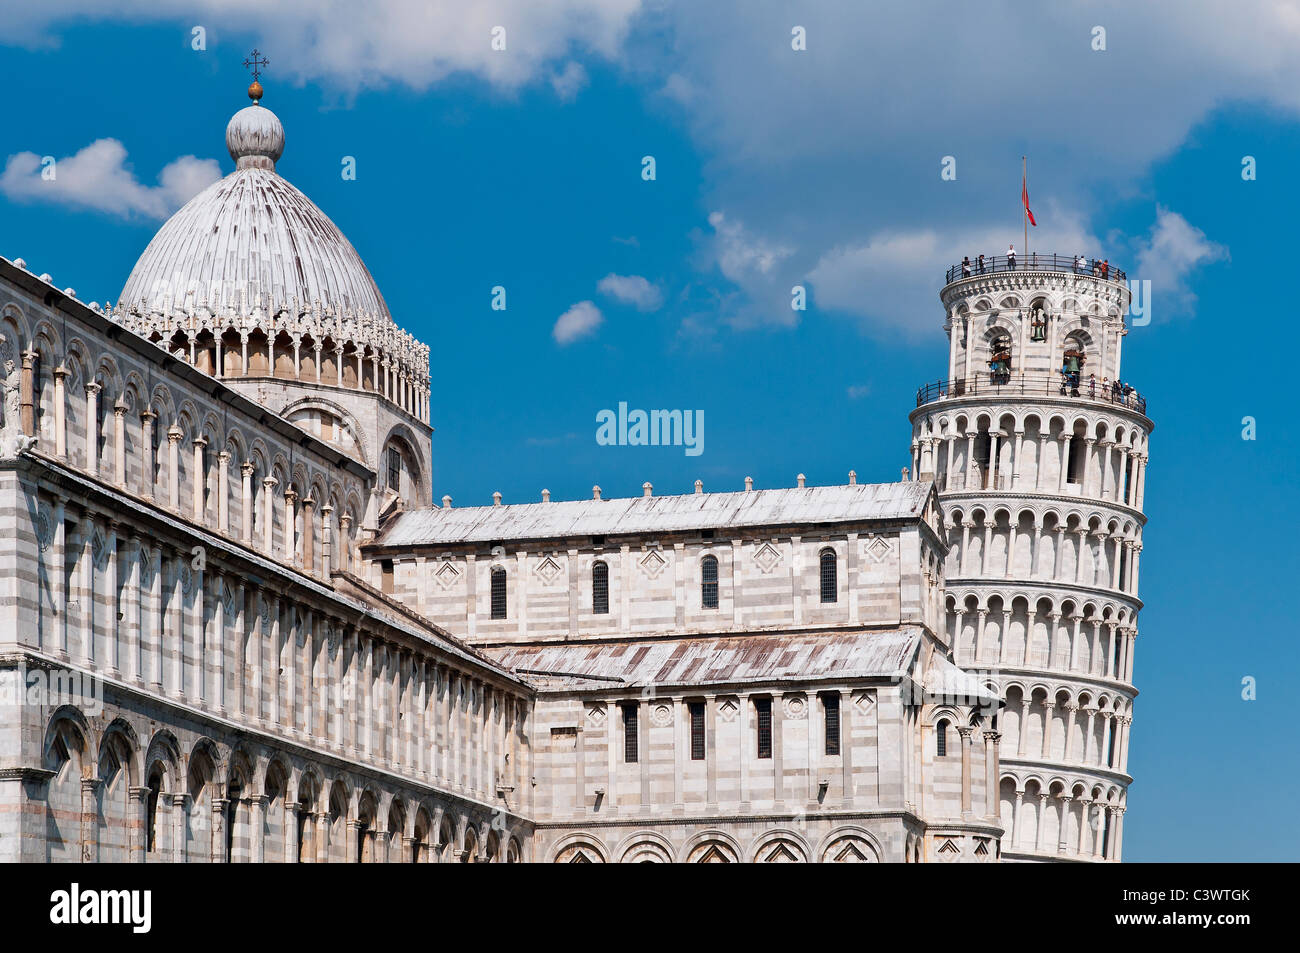 Vue sur la cathédrale et la Tour de Pise, la Piazza del Duomo (Place de la cathédrale), Pise, Toscane, Italie Banque D'Images